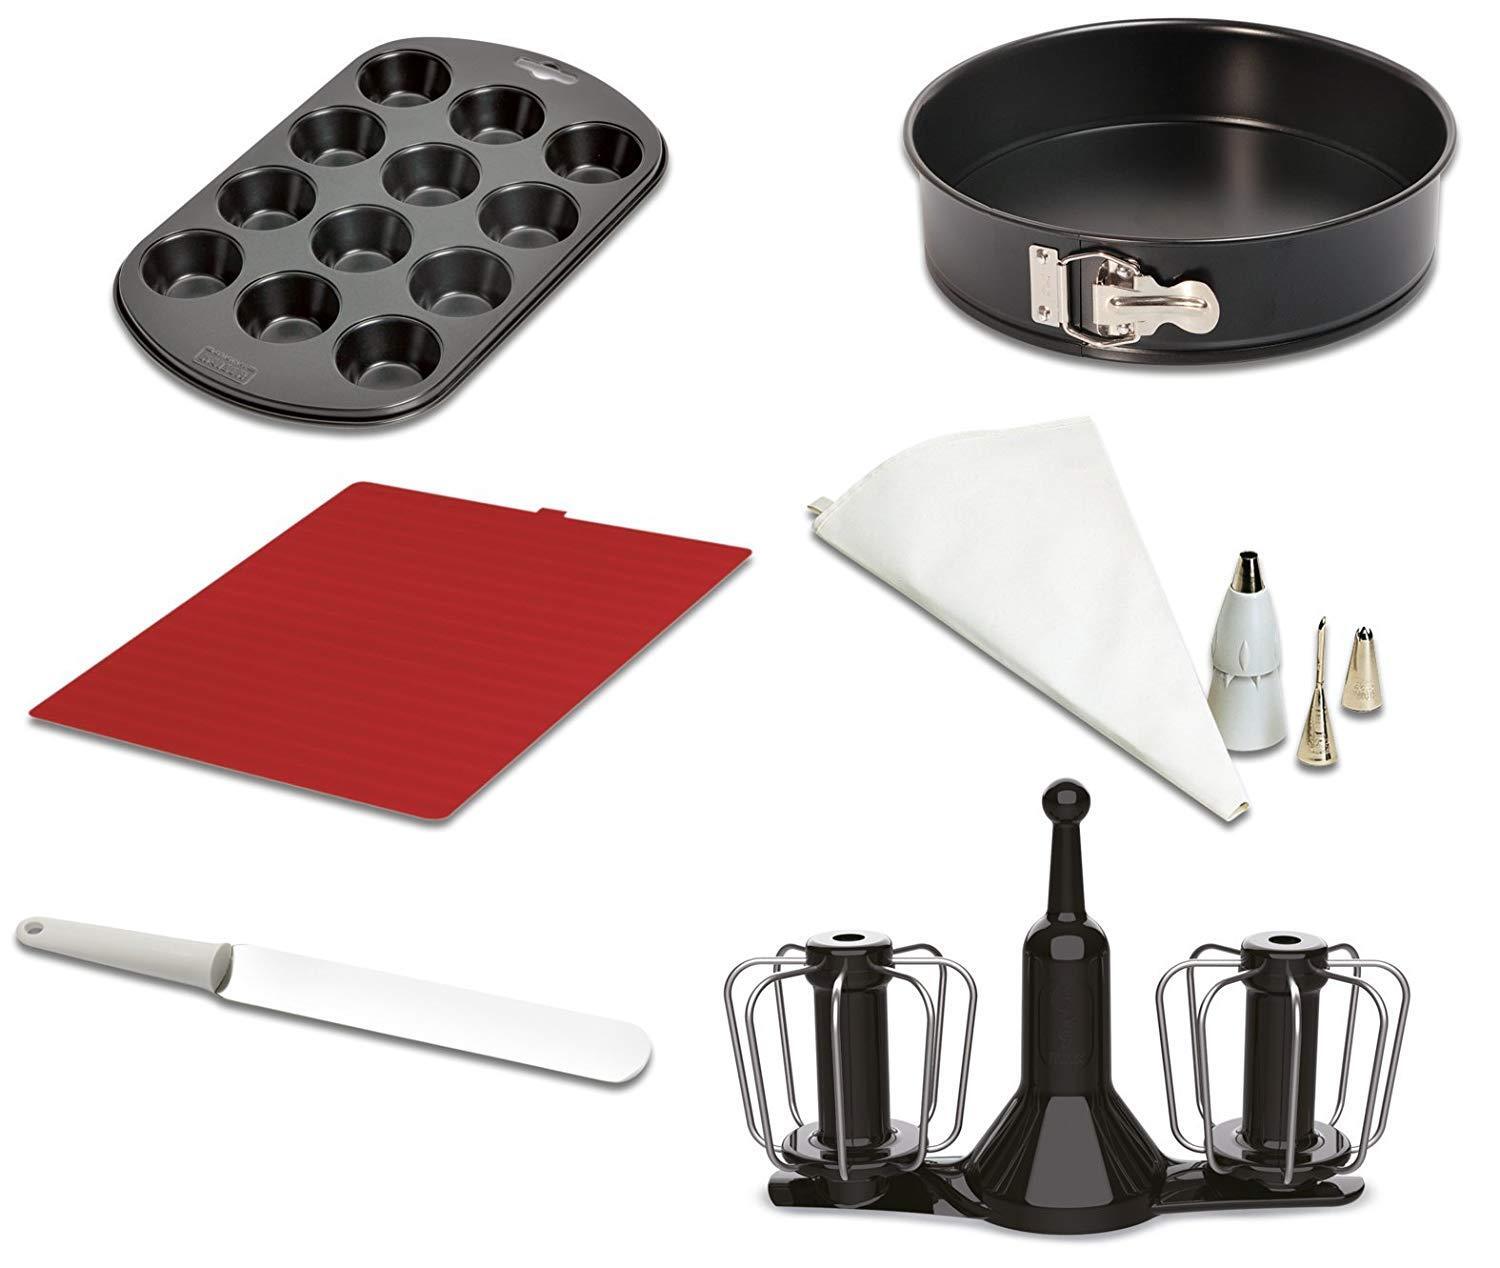 Moulinex nuovo accessorio kit pasticceria Cuisine Companion CuCo HF800 –  PGService